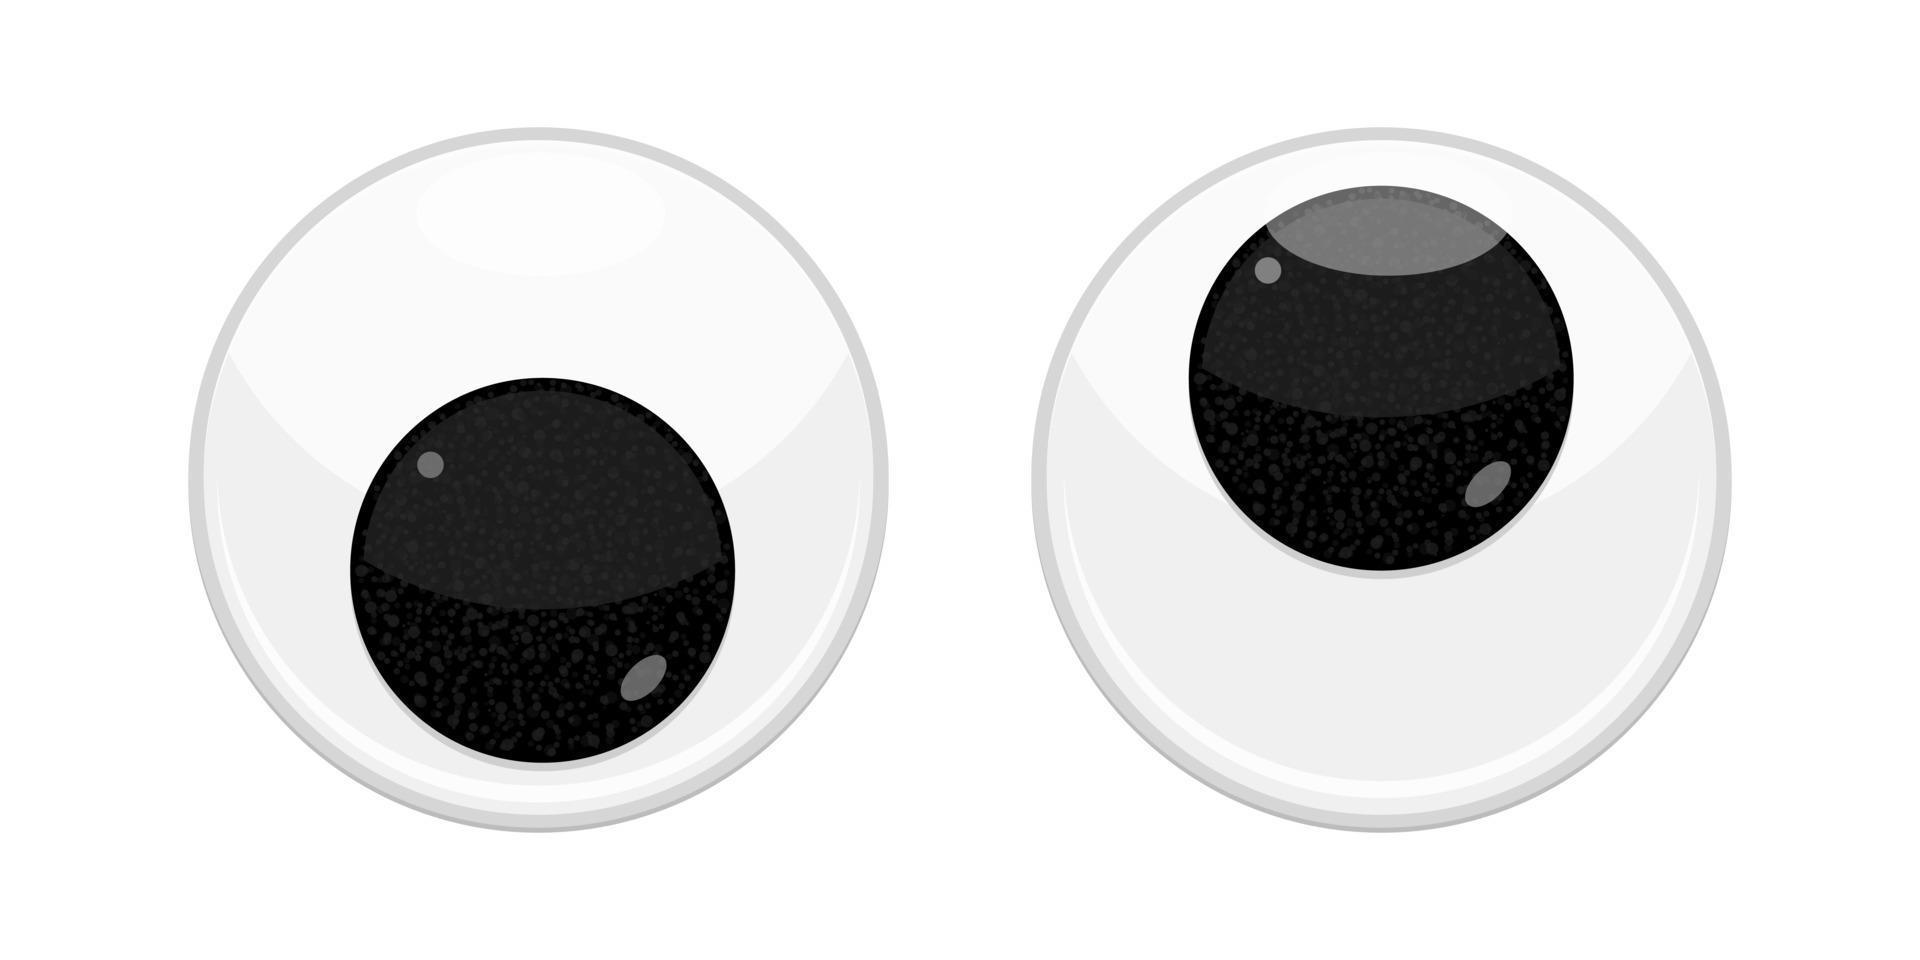 giocattolo in plastica sicurezza occhi traballanti design piatto illustrazione vettoriale isolato su sfondo bianco.